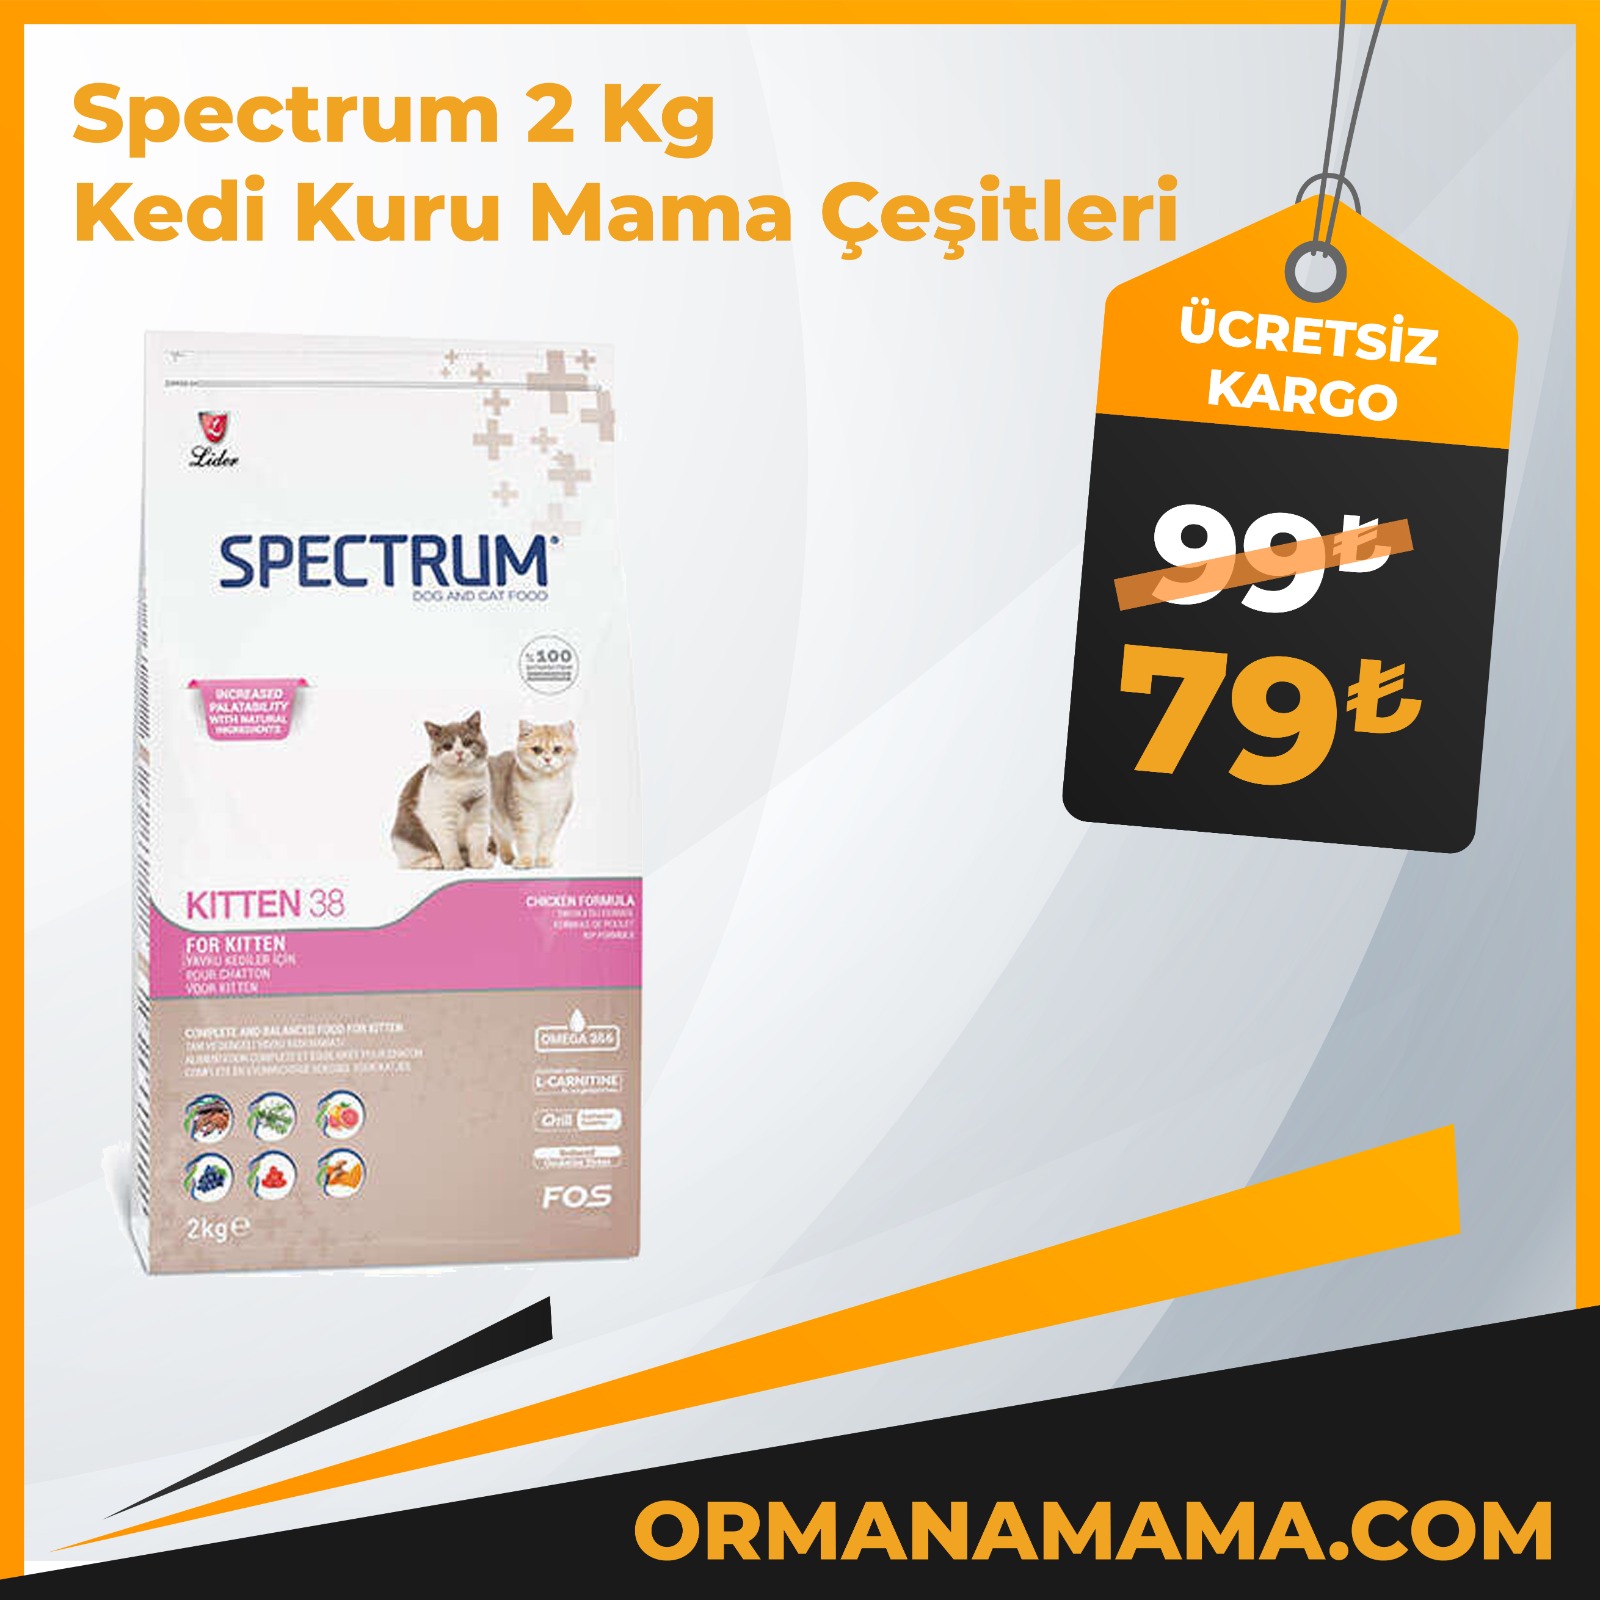 Spectrum 2 Kg Kedi Kuru Mama Çeşitleri